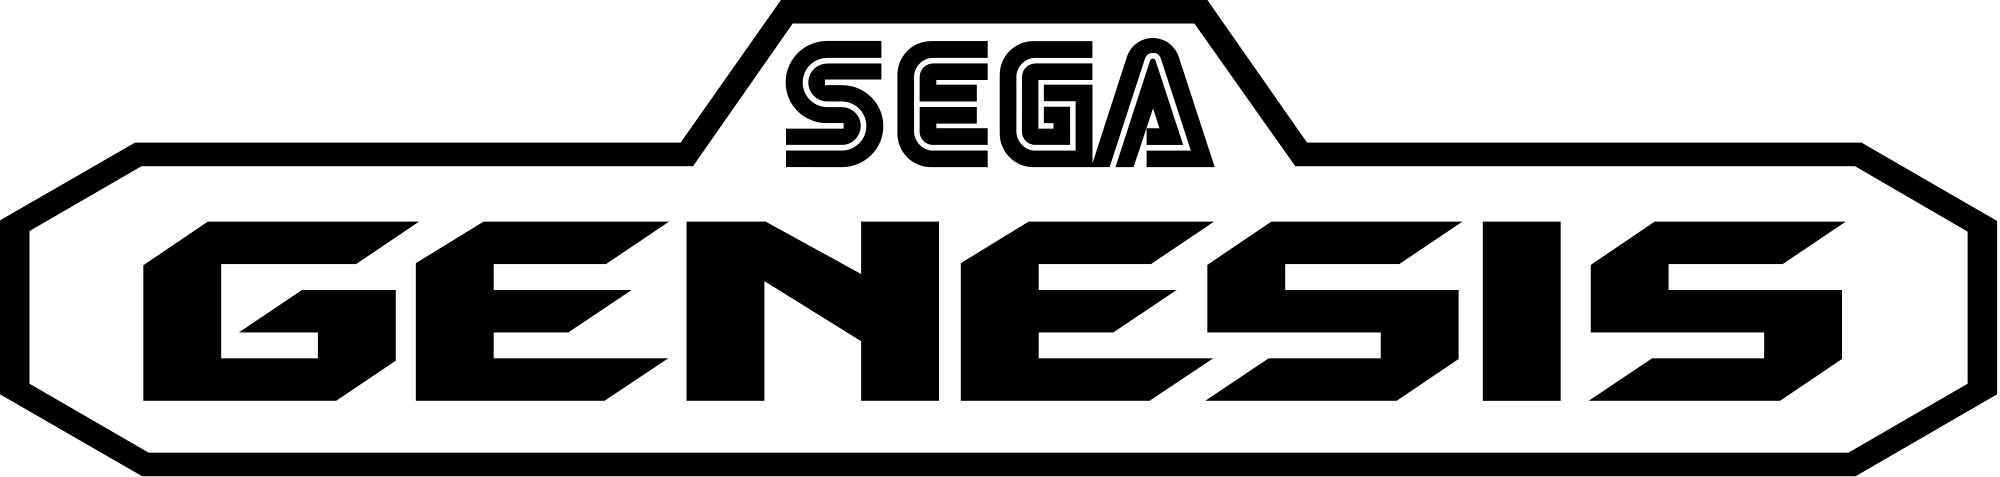 Sega Genesis Logo.